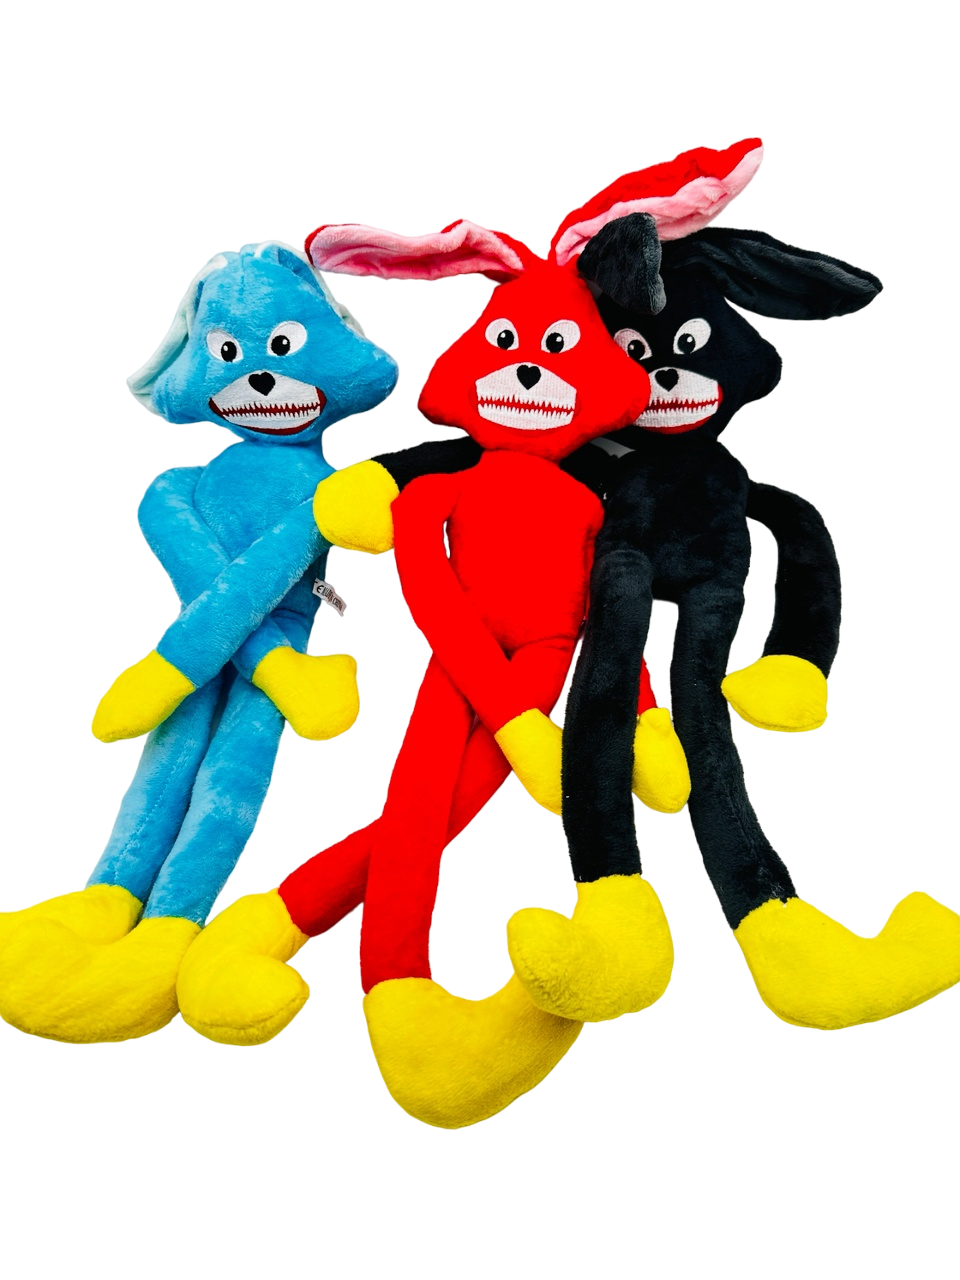 Мягкие игрушки 3 Веселых Зайца голубой, красный, черный два зайца три сосны